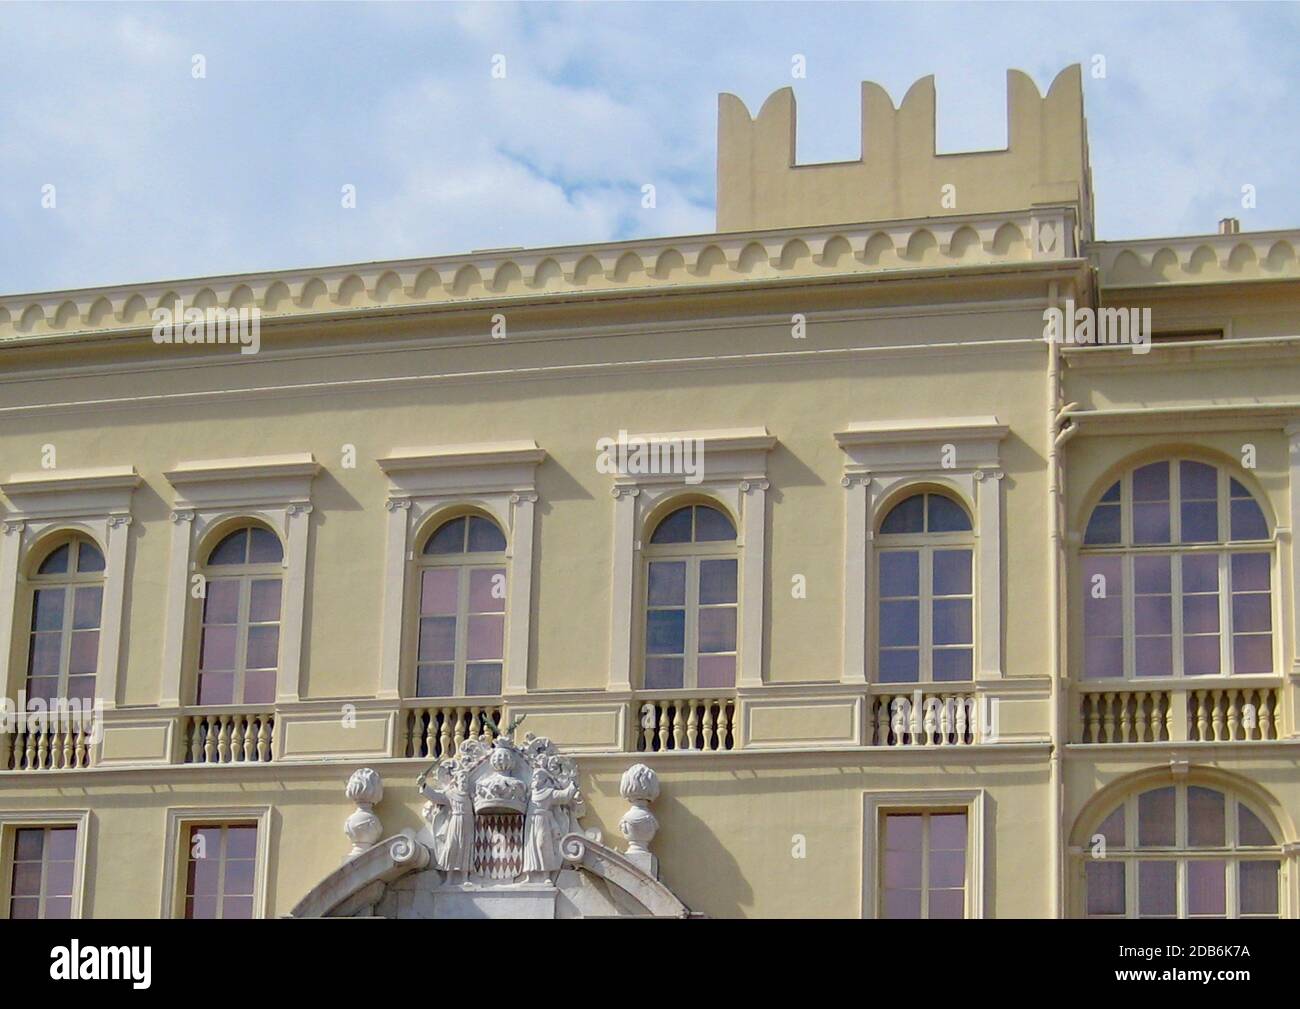 Fassade des Fürstenpalastes von Monaco, Residenz des Fürsten von Monaco. Möglicherweise Schlafzimmer. Stockfoto